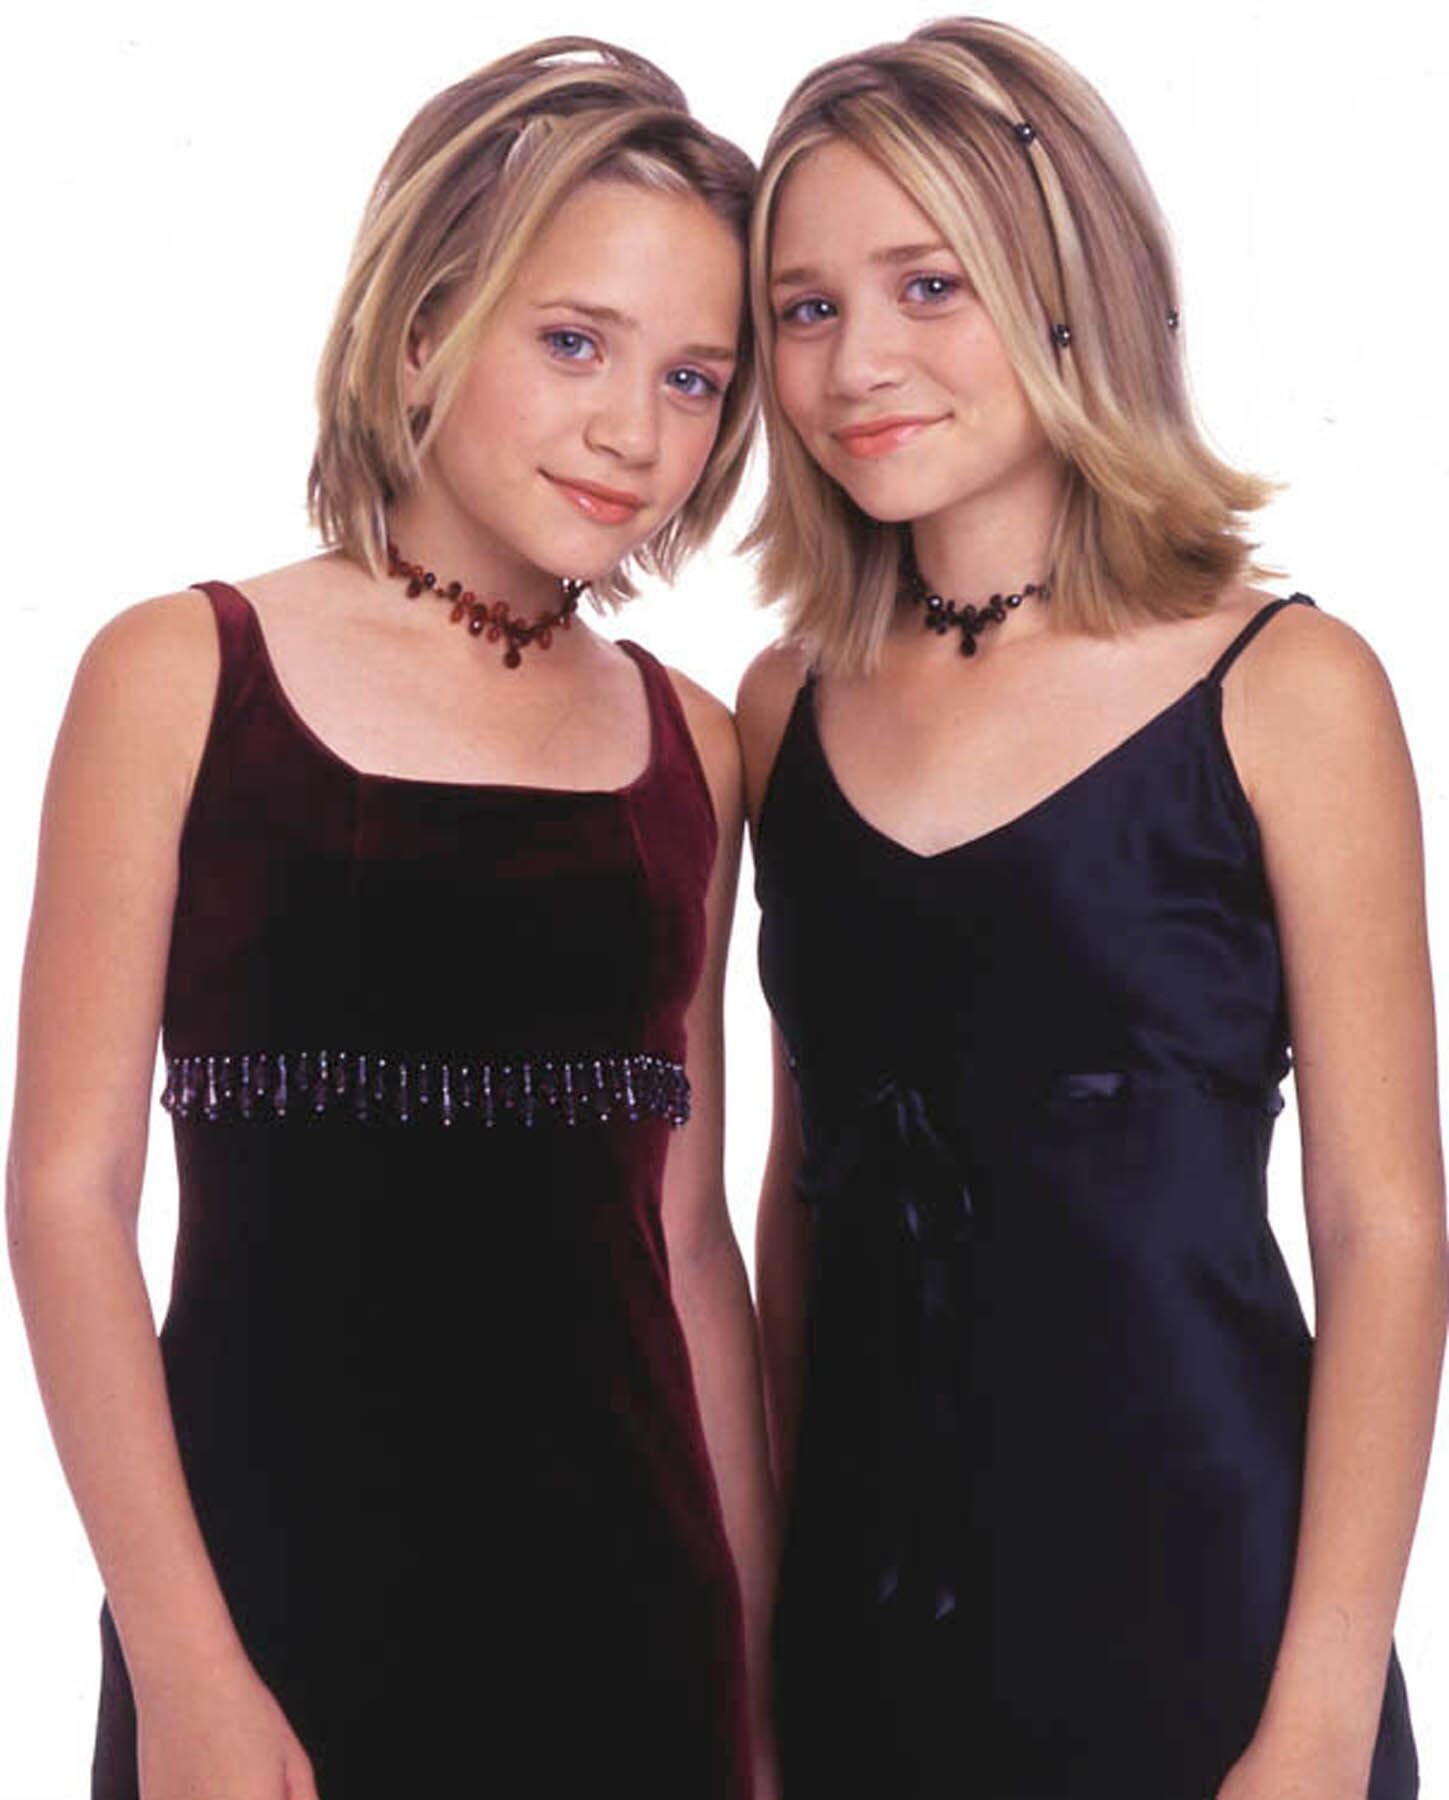 Mary-Kate et Ashley Olsen lancent un agenda de poche spécialement conçu pour les filles |Source: Getty Images